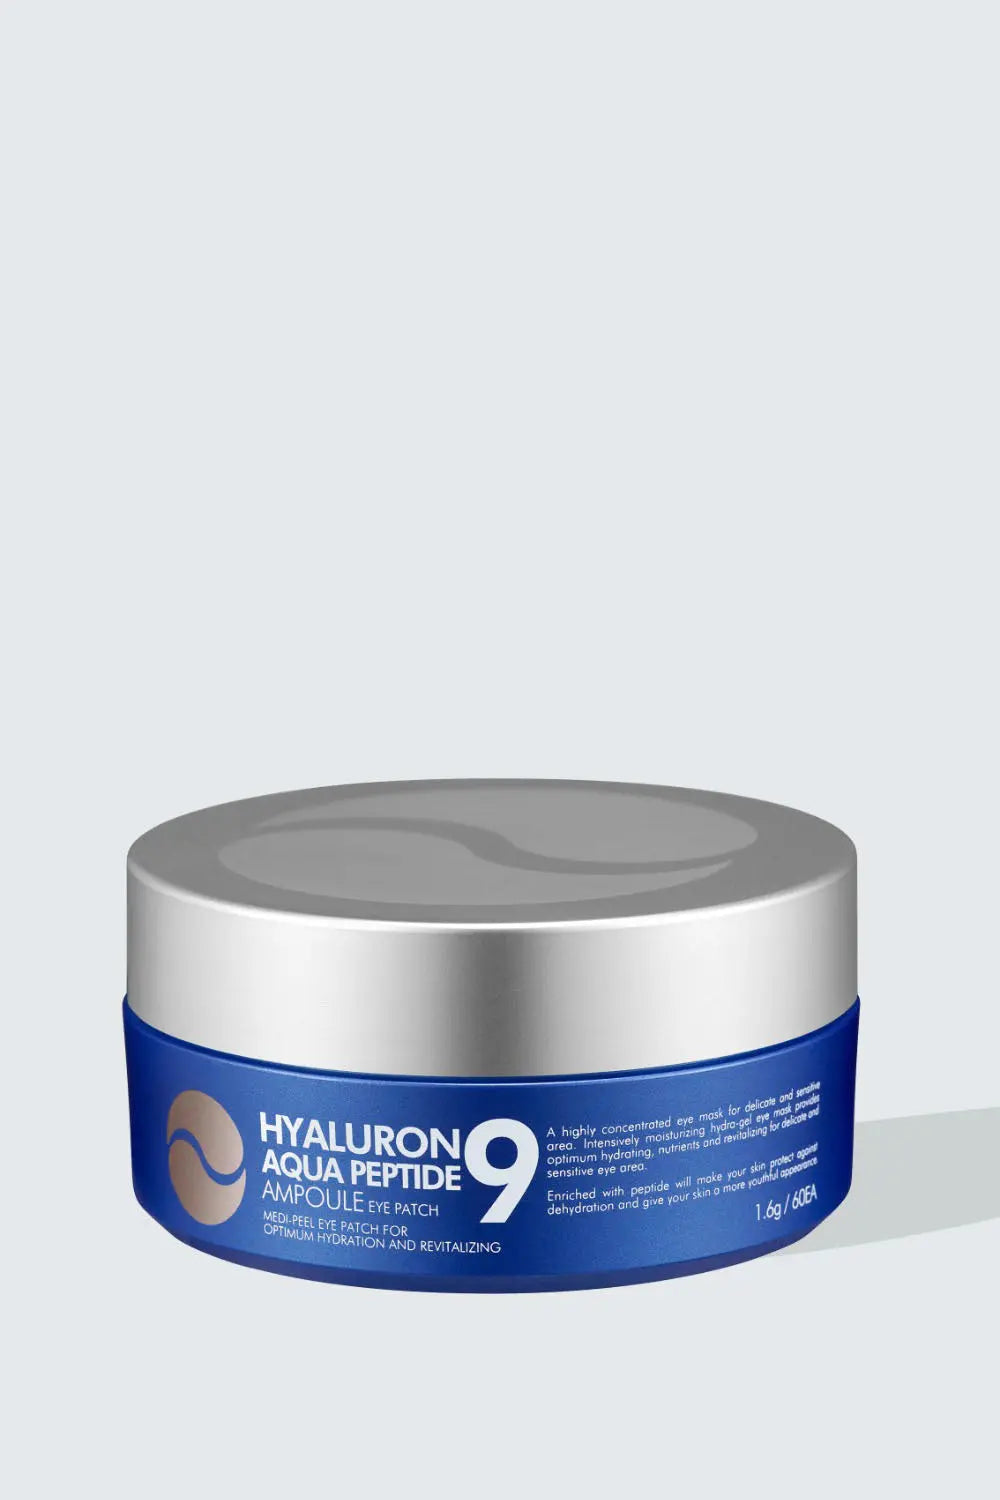 Hyaluron Aqua Peptide 9 Ampoule Eye Patch - 1.6g x 60ea MEDI-PEEL